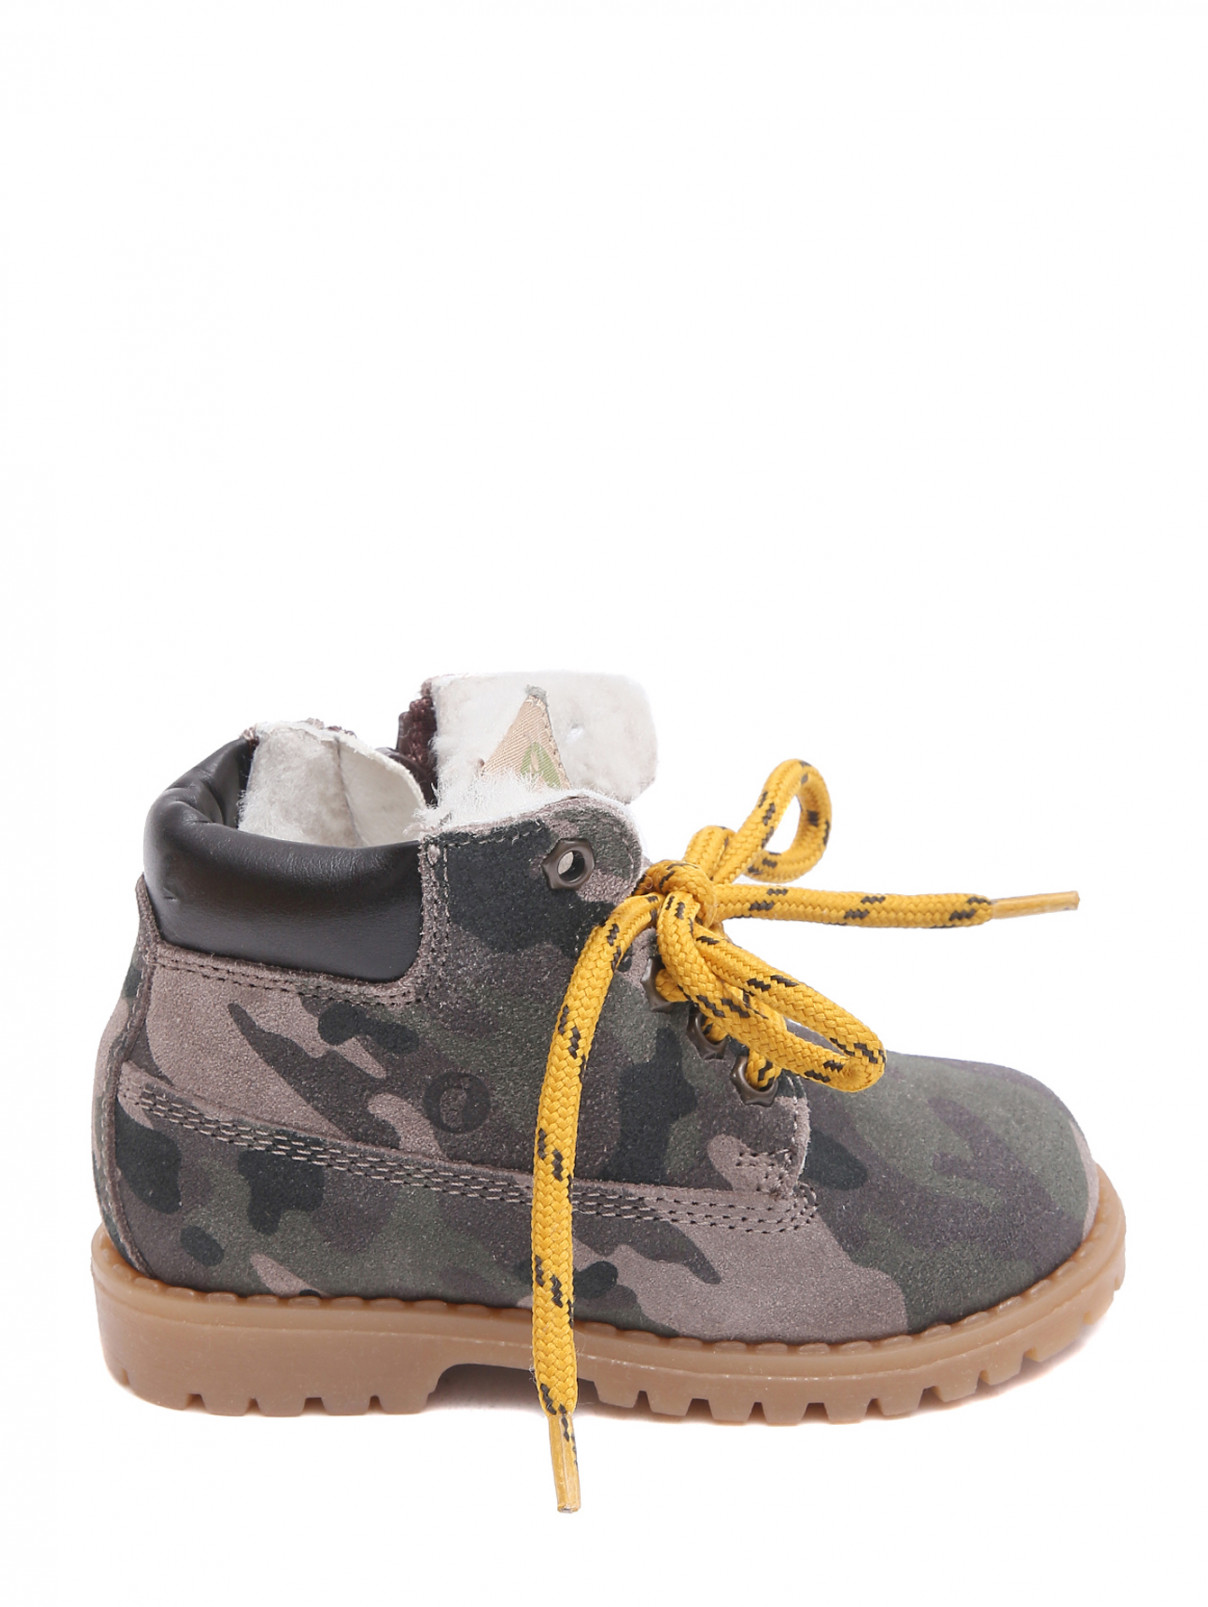 Замшевые ботинки с узором "камуфляж" Walkey  –  Обтравка1  – Цвет:  Узор